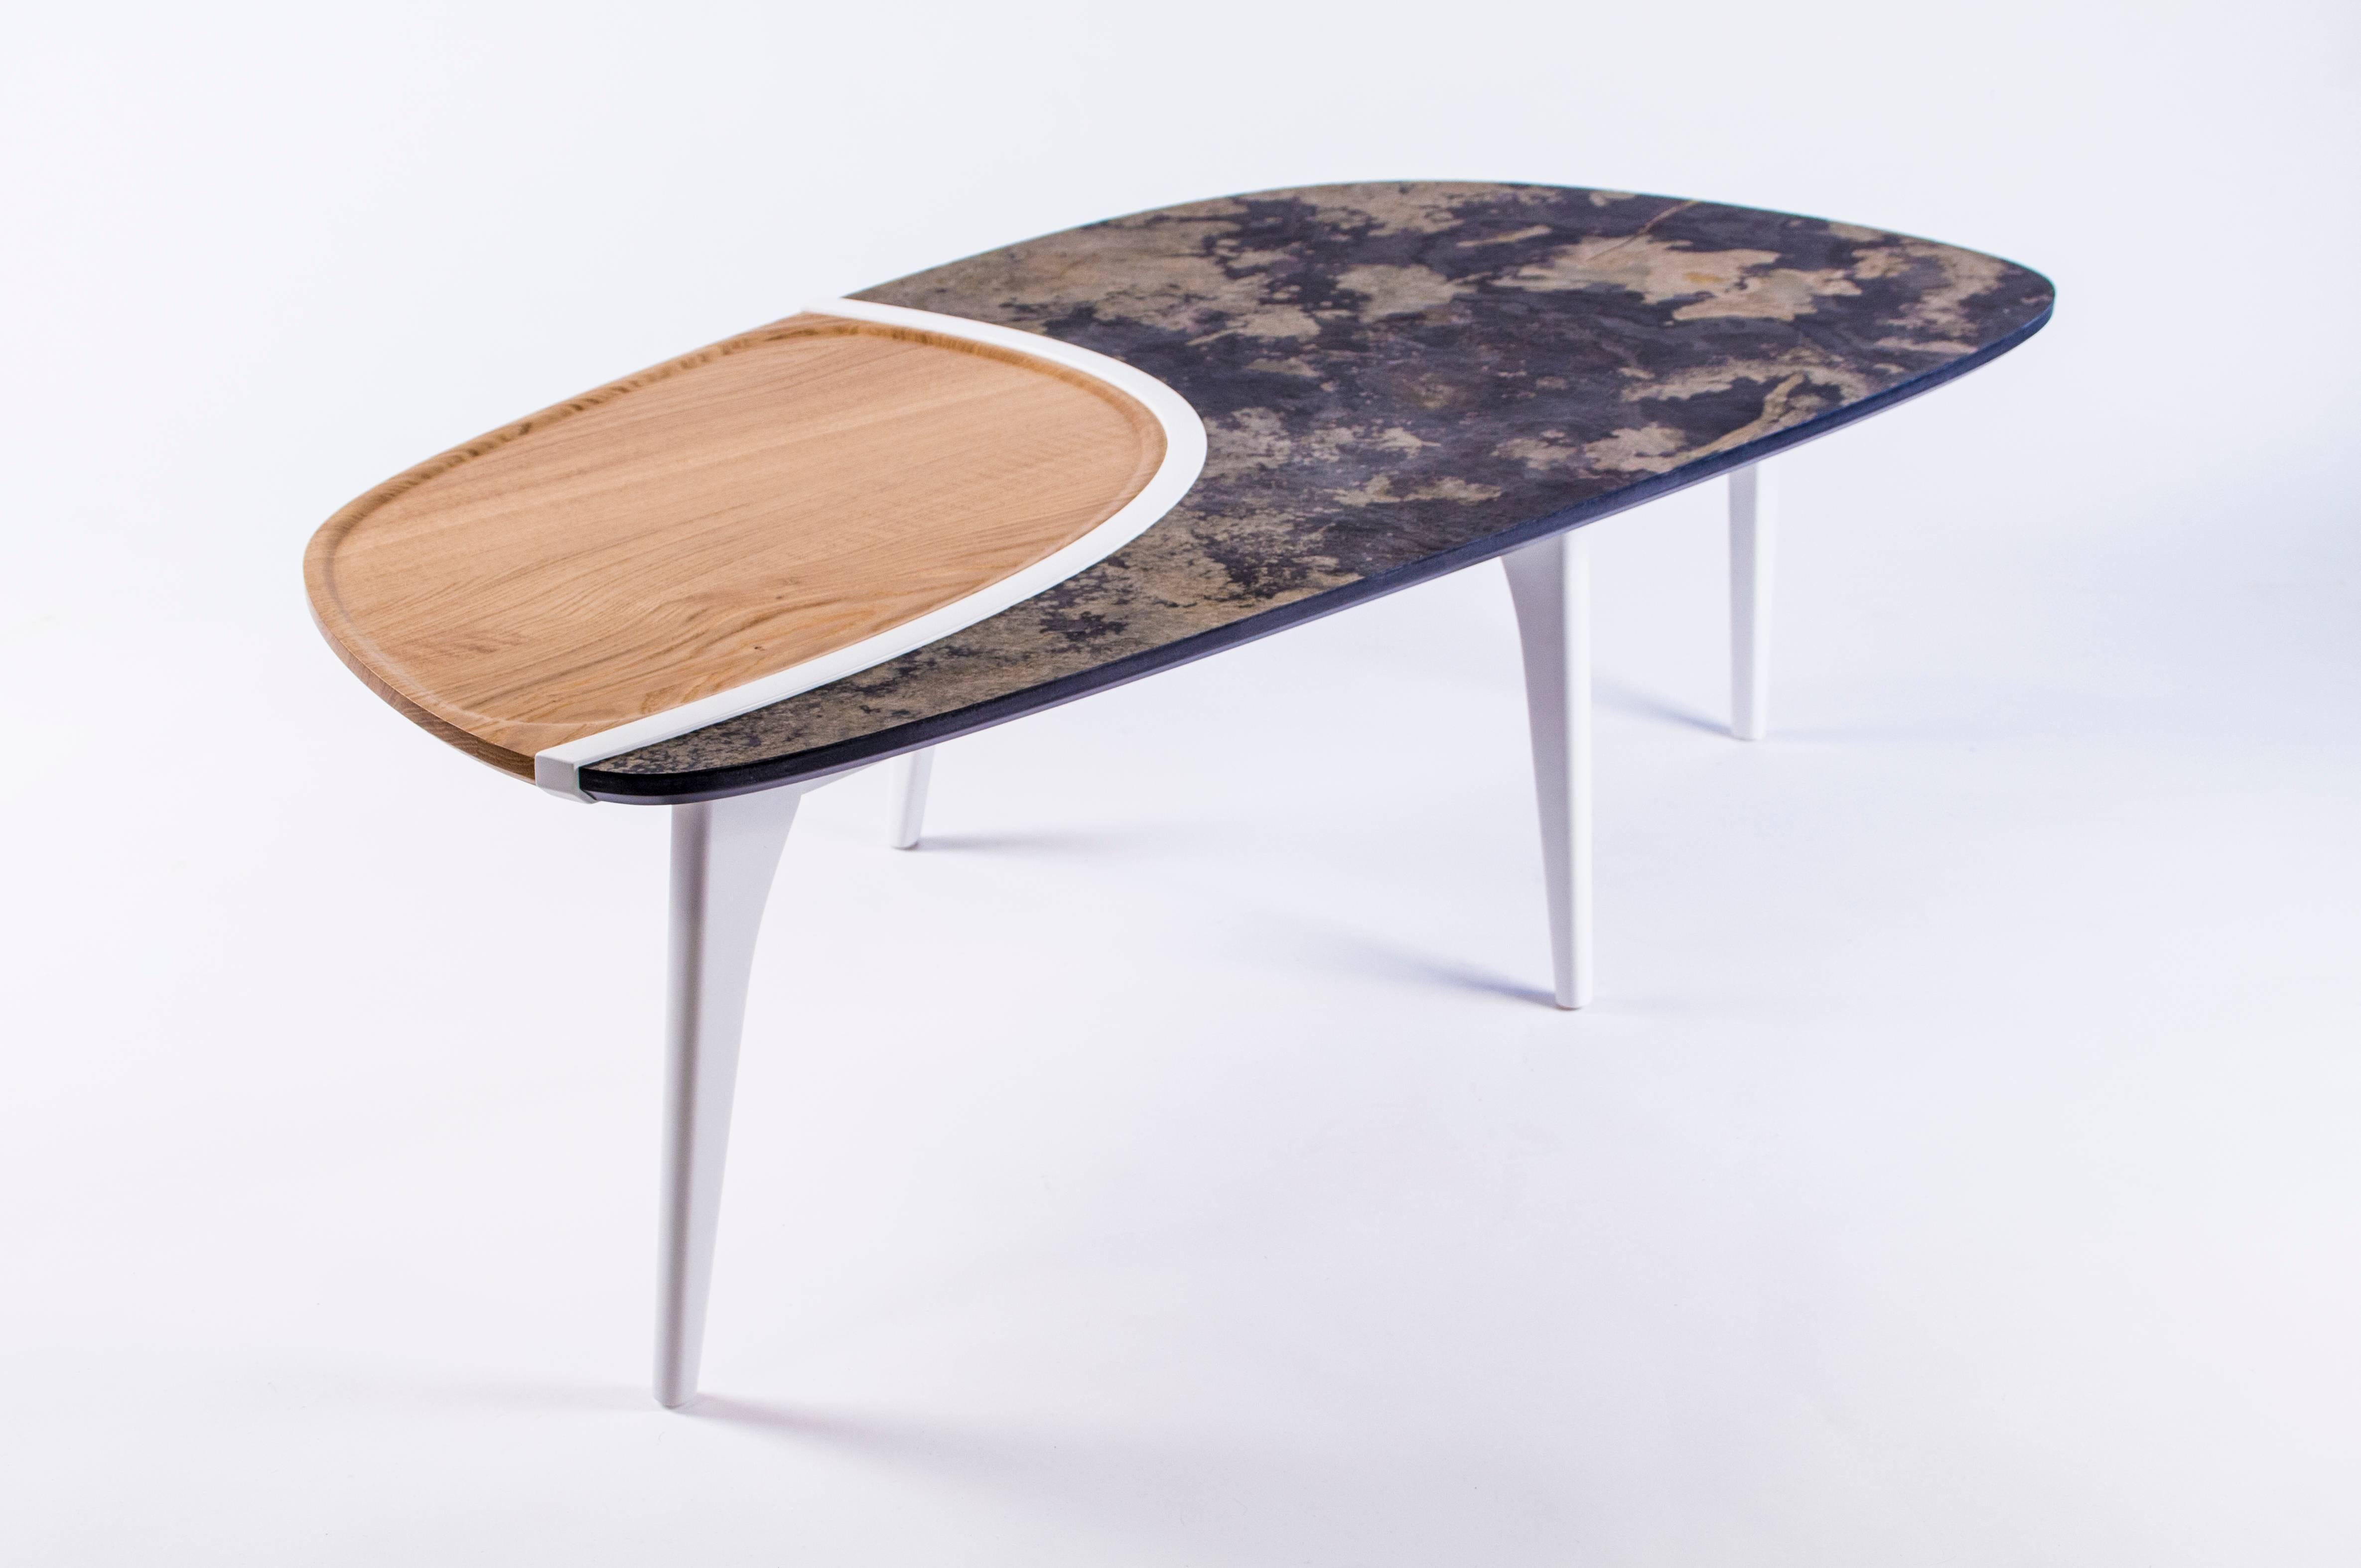 Der große Tisch wurde von einem talentierten Designer entworfen und stellt eine einzigartige Kombination aus hoher und neuer Technologie, Materialien und Linien dar.
Sie haben die Wahl zwischen zwei verschiedenen Farben und MATERIAL-Kombinationen,